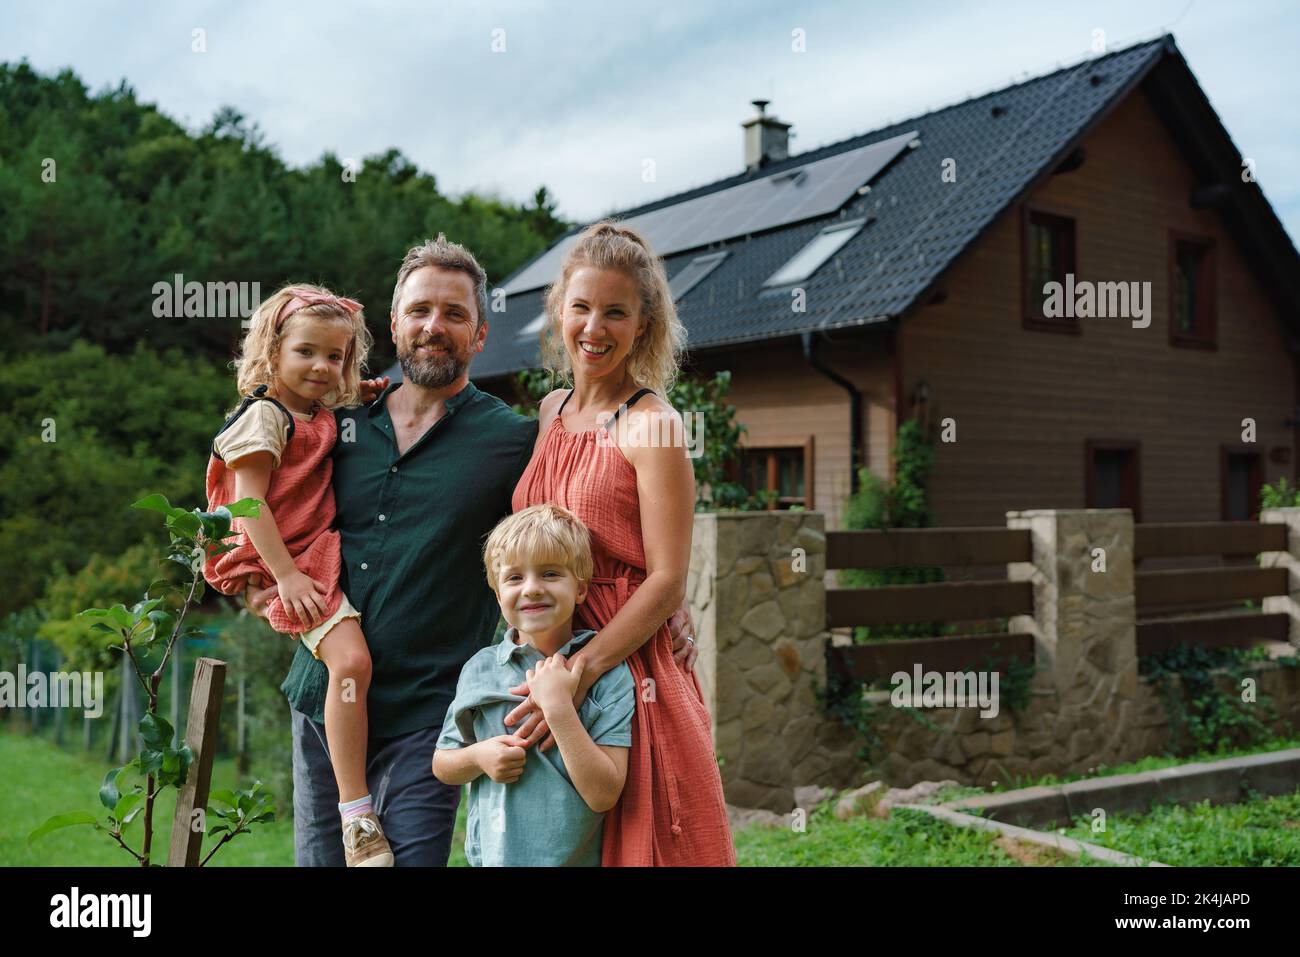 Glückliche Familie in der Nähe ihres Hauses mit Sonnenkollektoren. Alternative Energie, Ressourcenschonung und nachhaltiges Lifestyle-Konzept. Stockfoto